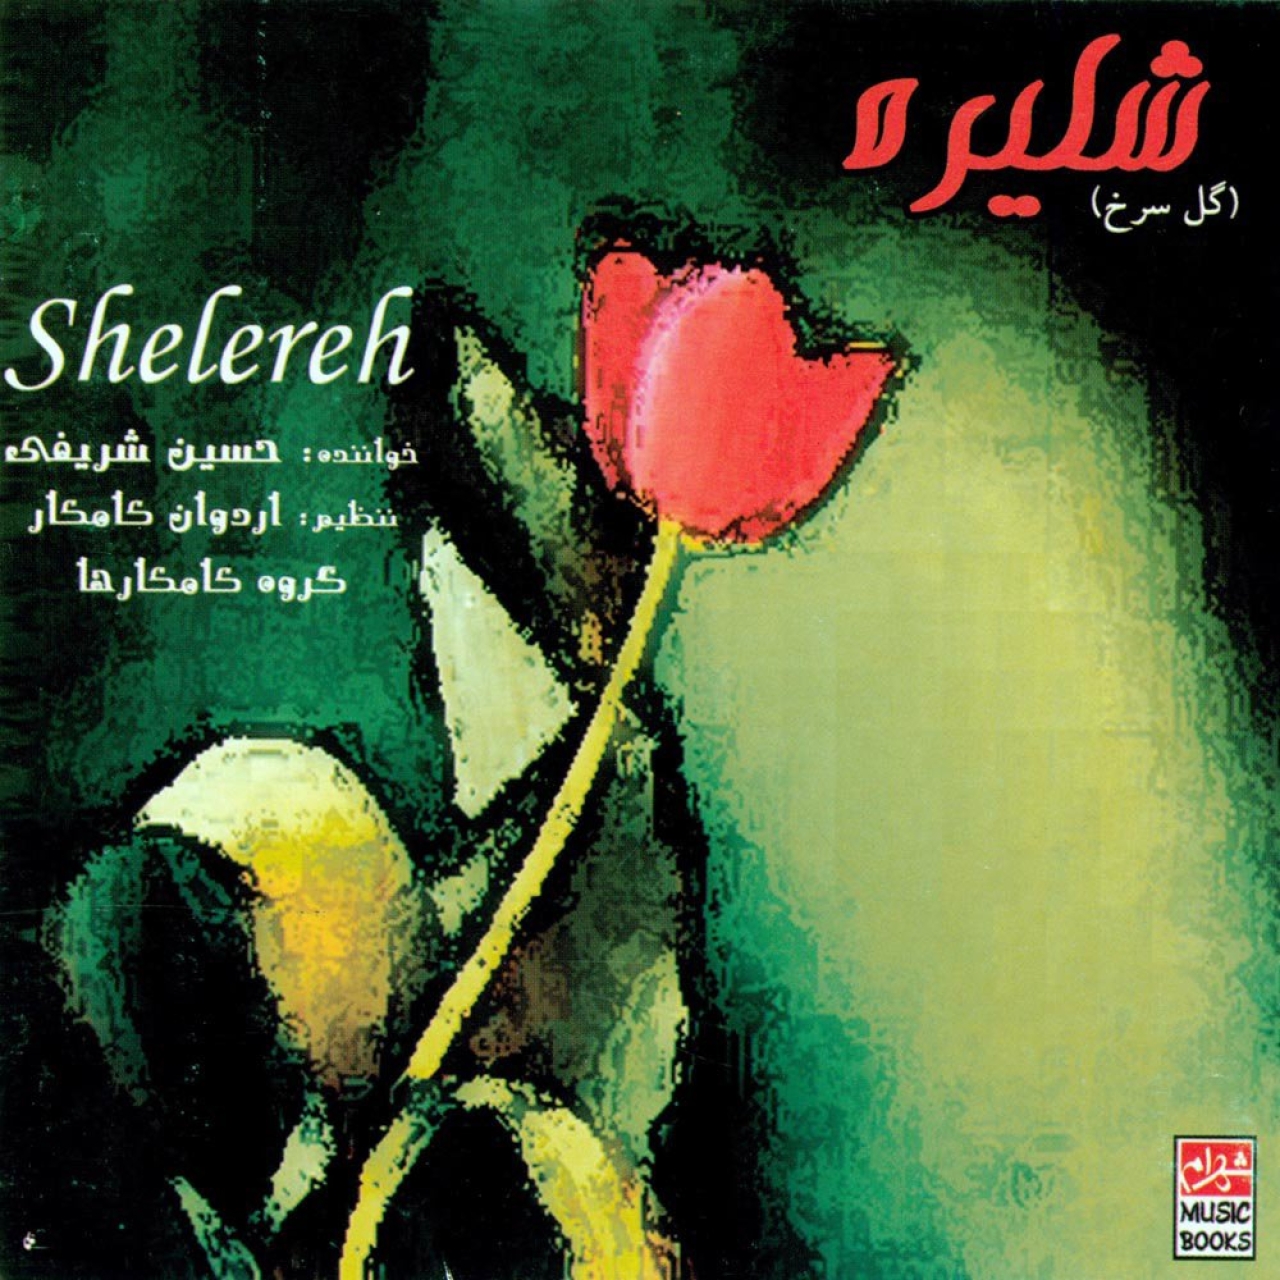 آلبوم موسیقی شلیره اثر حسین شریفی